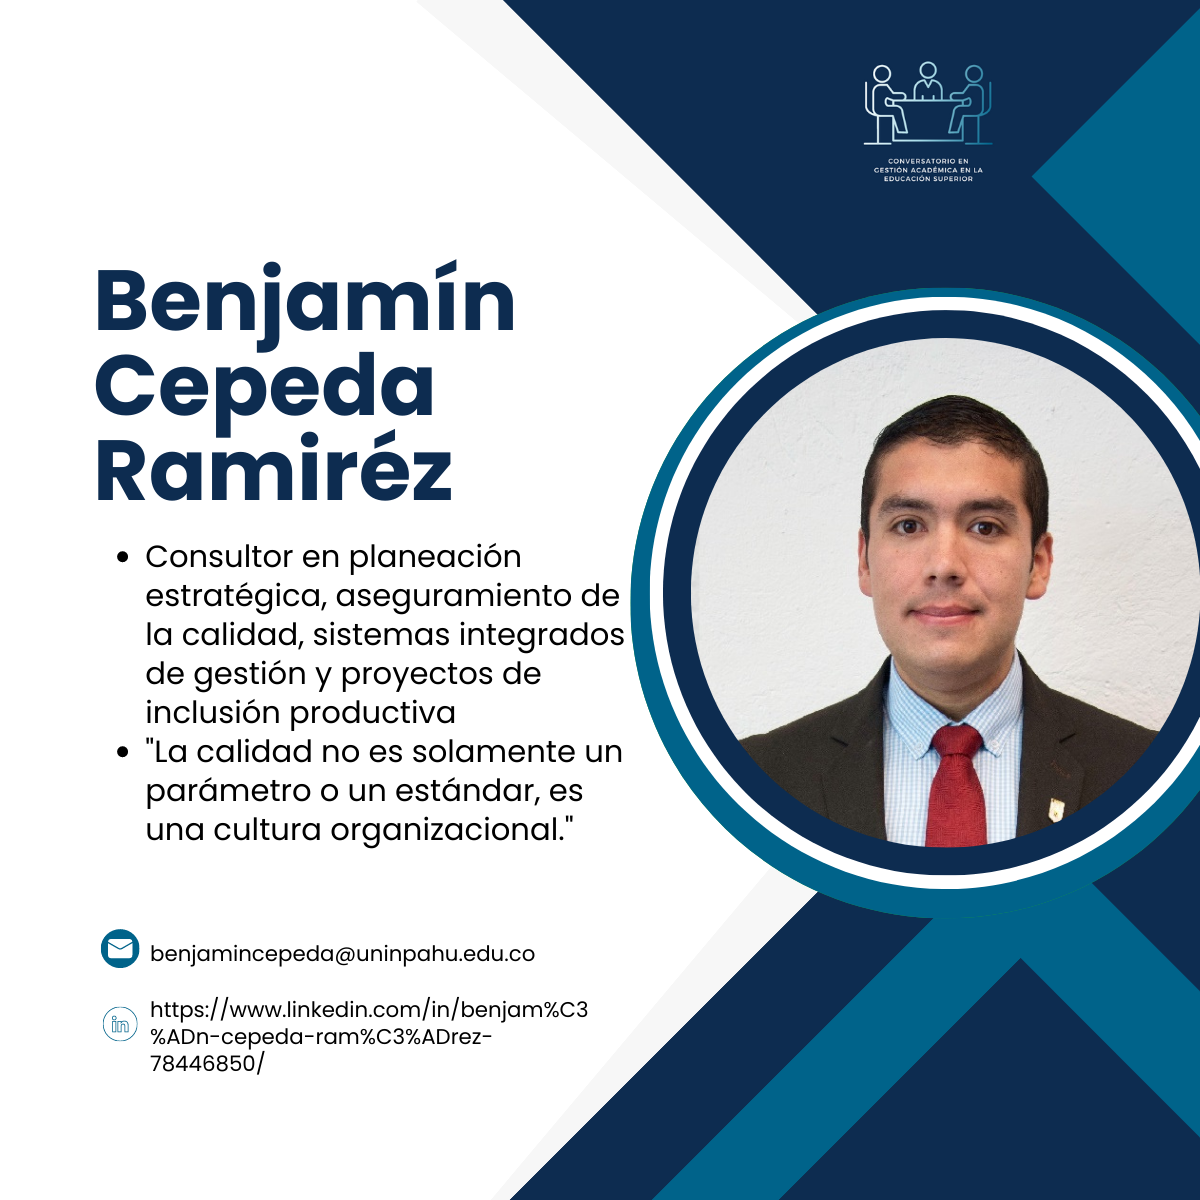 Benjamin cepeda (3)